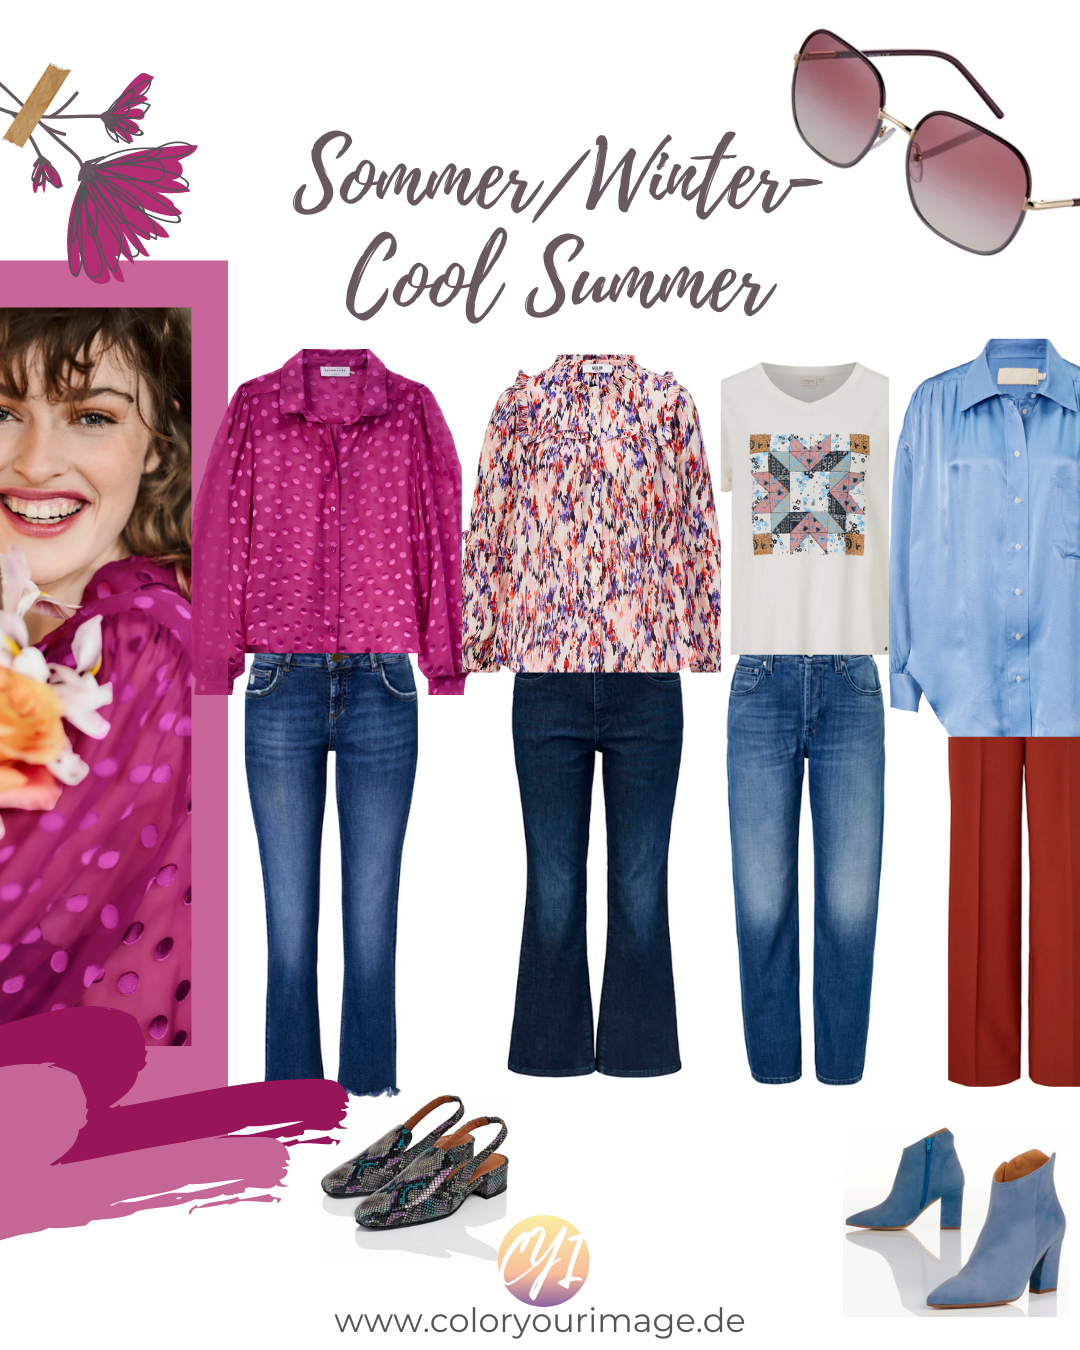 Perfekte Farben und Outfit Inspirationen für Sommer/Winter- Mischtypen, Party, Glanz und Glitter Looks